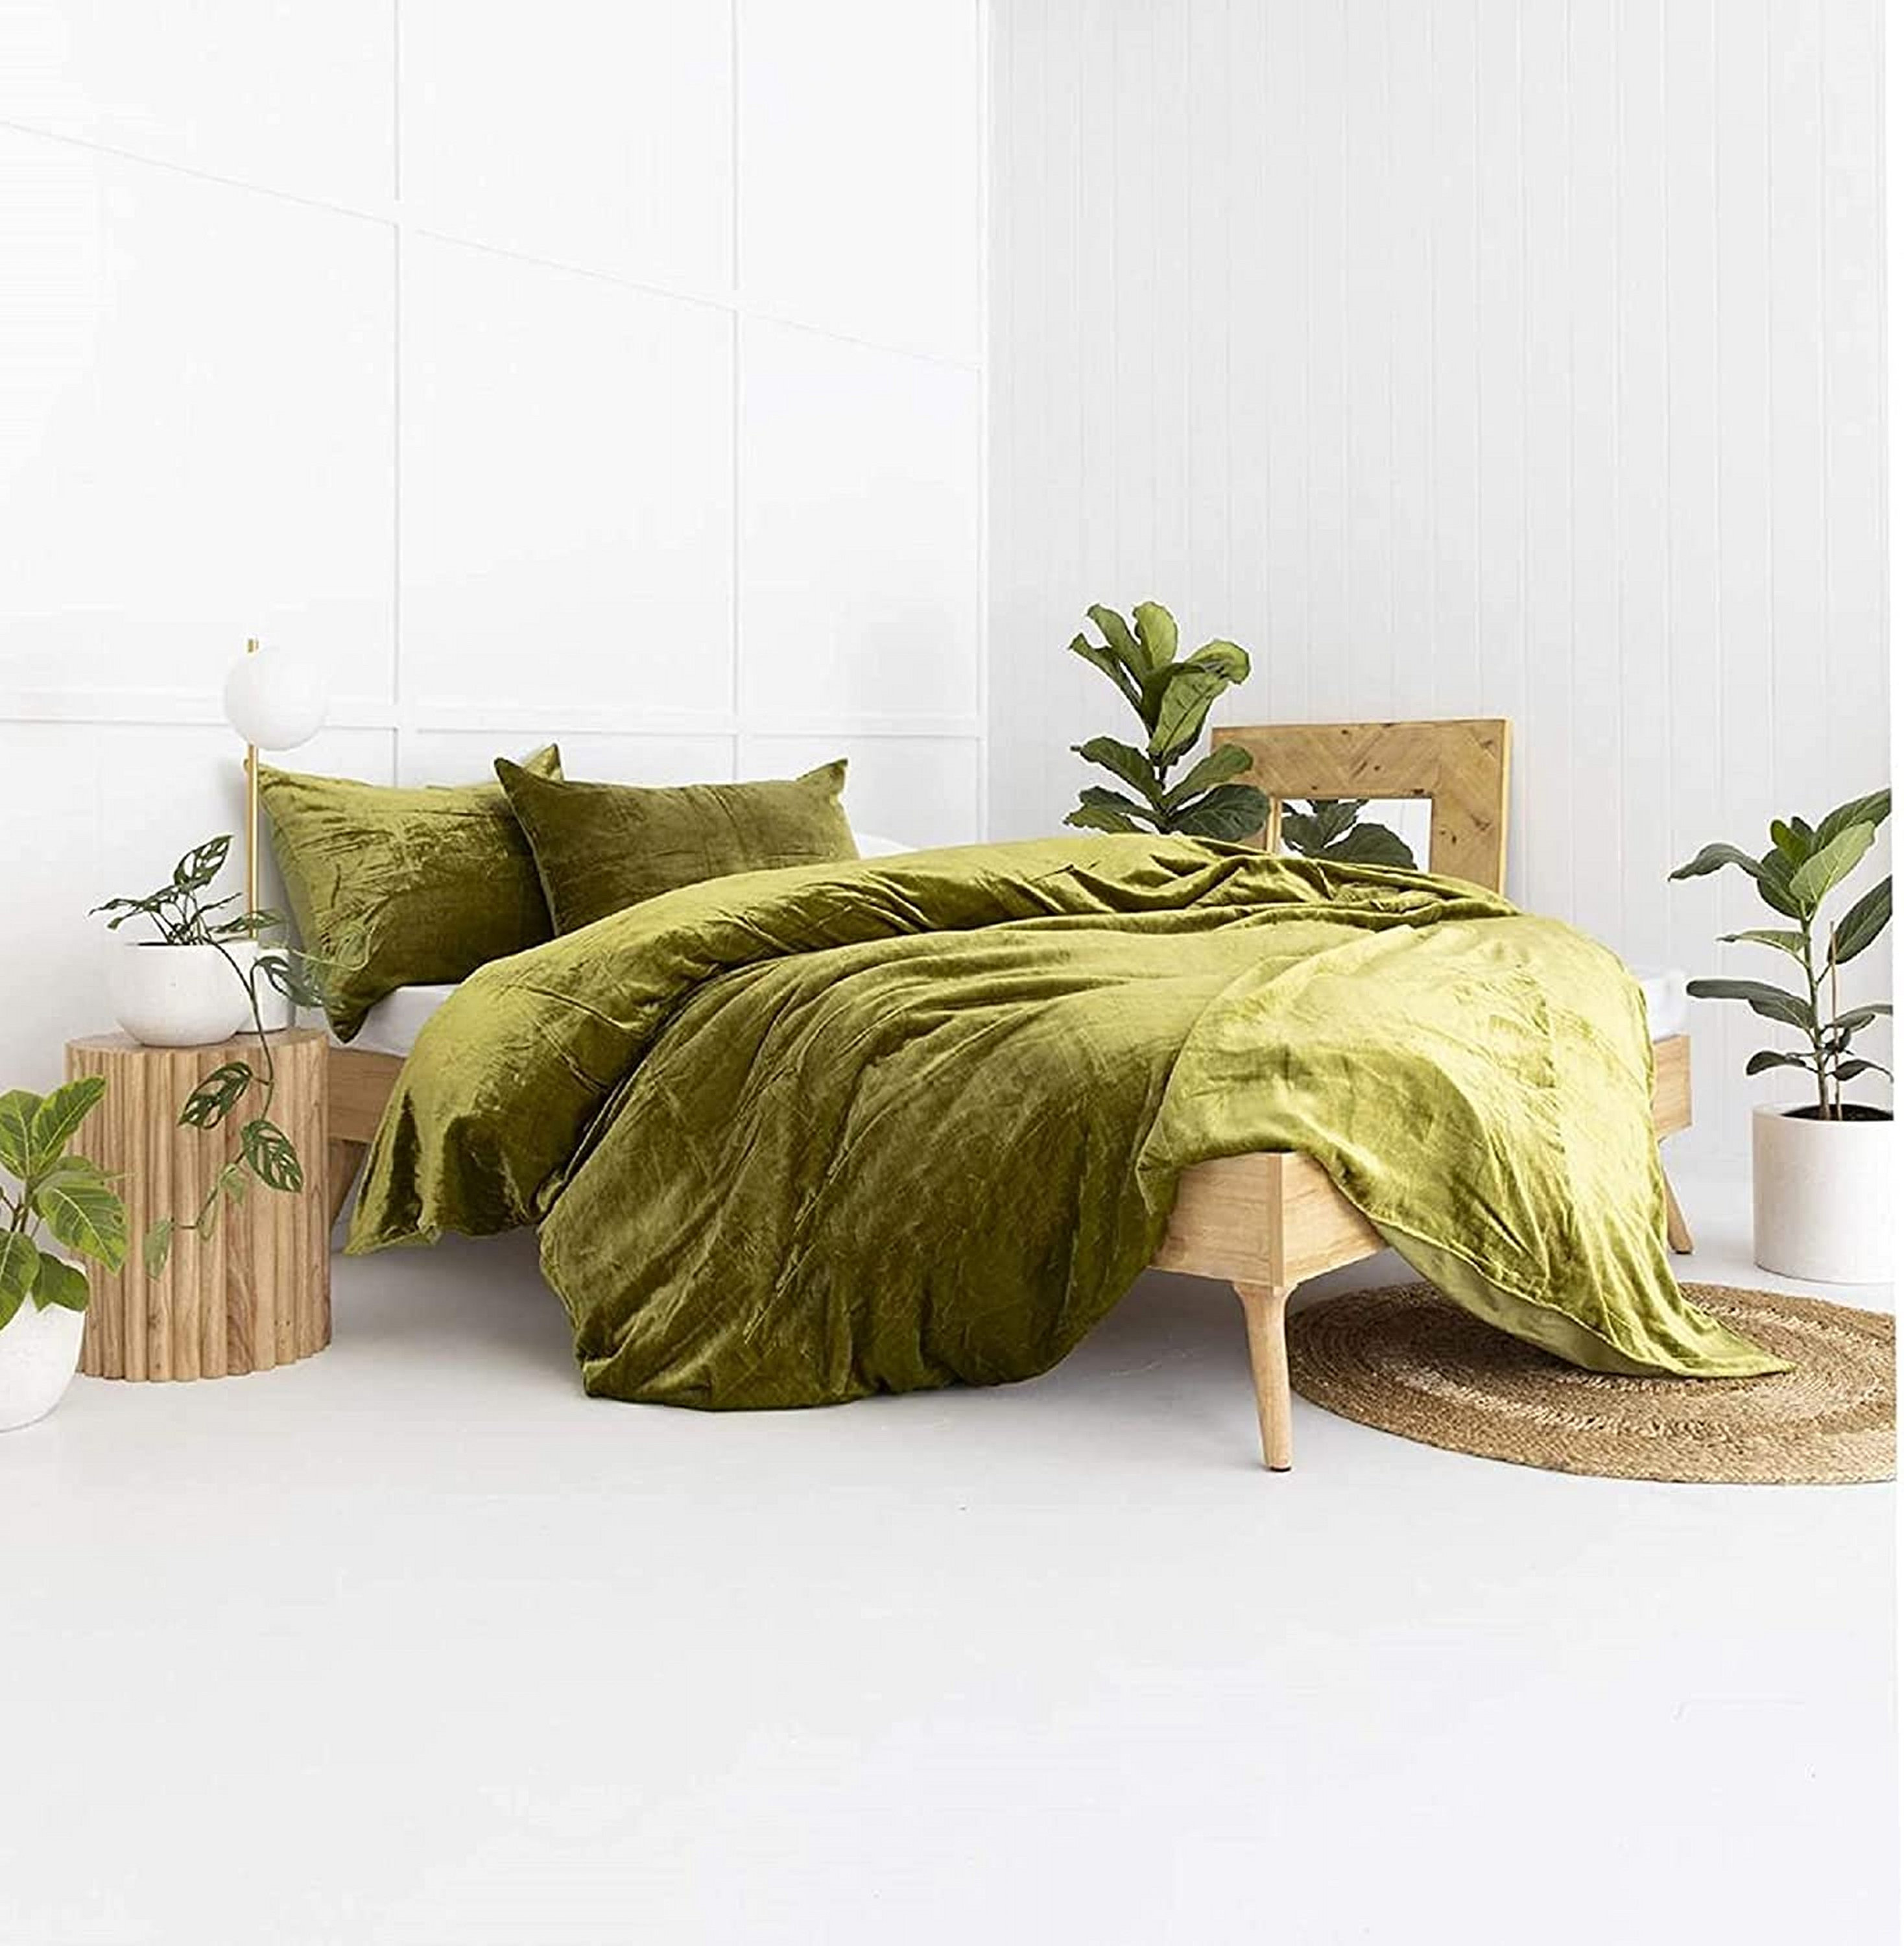 Luxury fruit green plush fluffy mink velvet duvet cover Qui stitched  bedding set